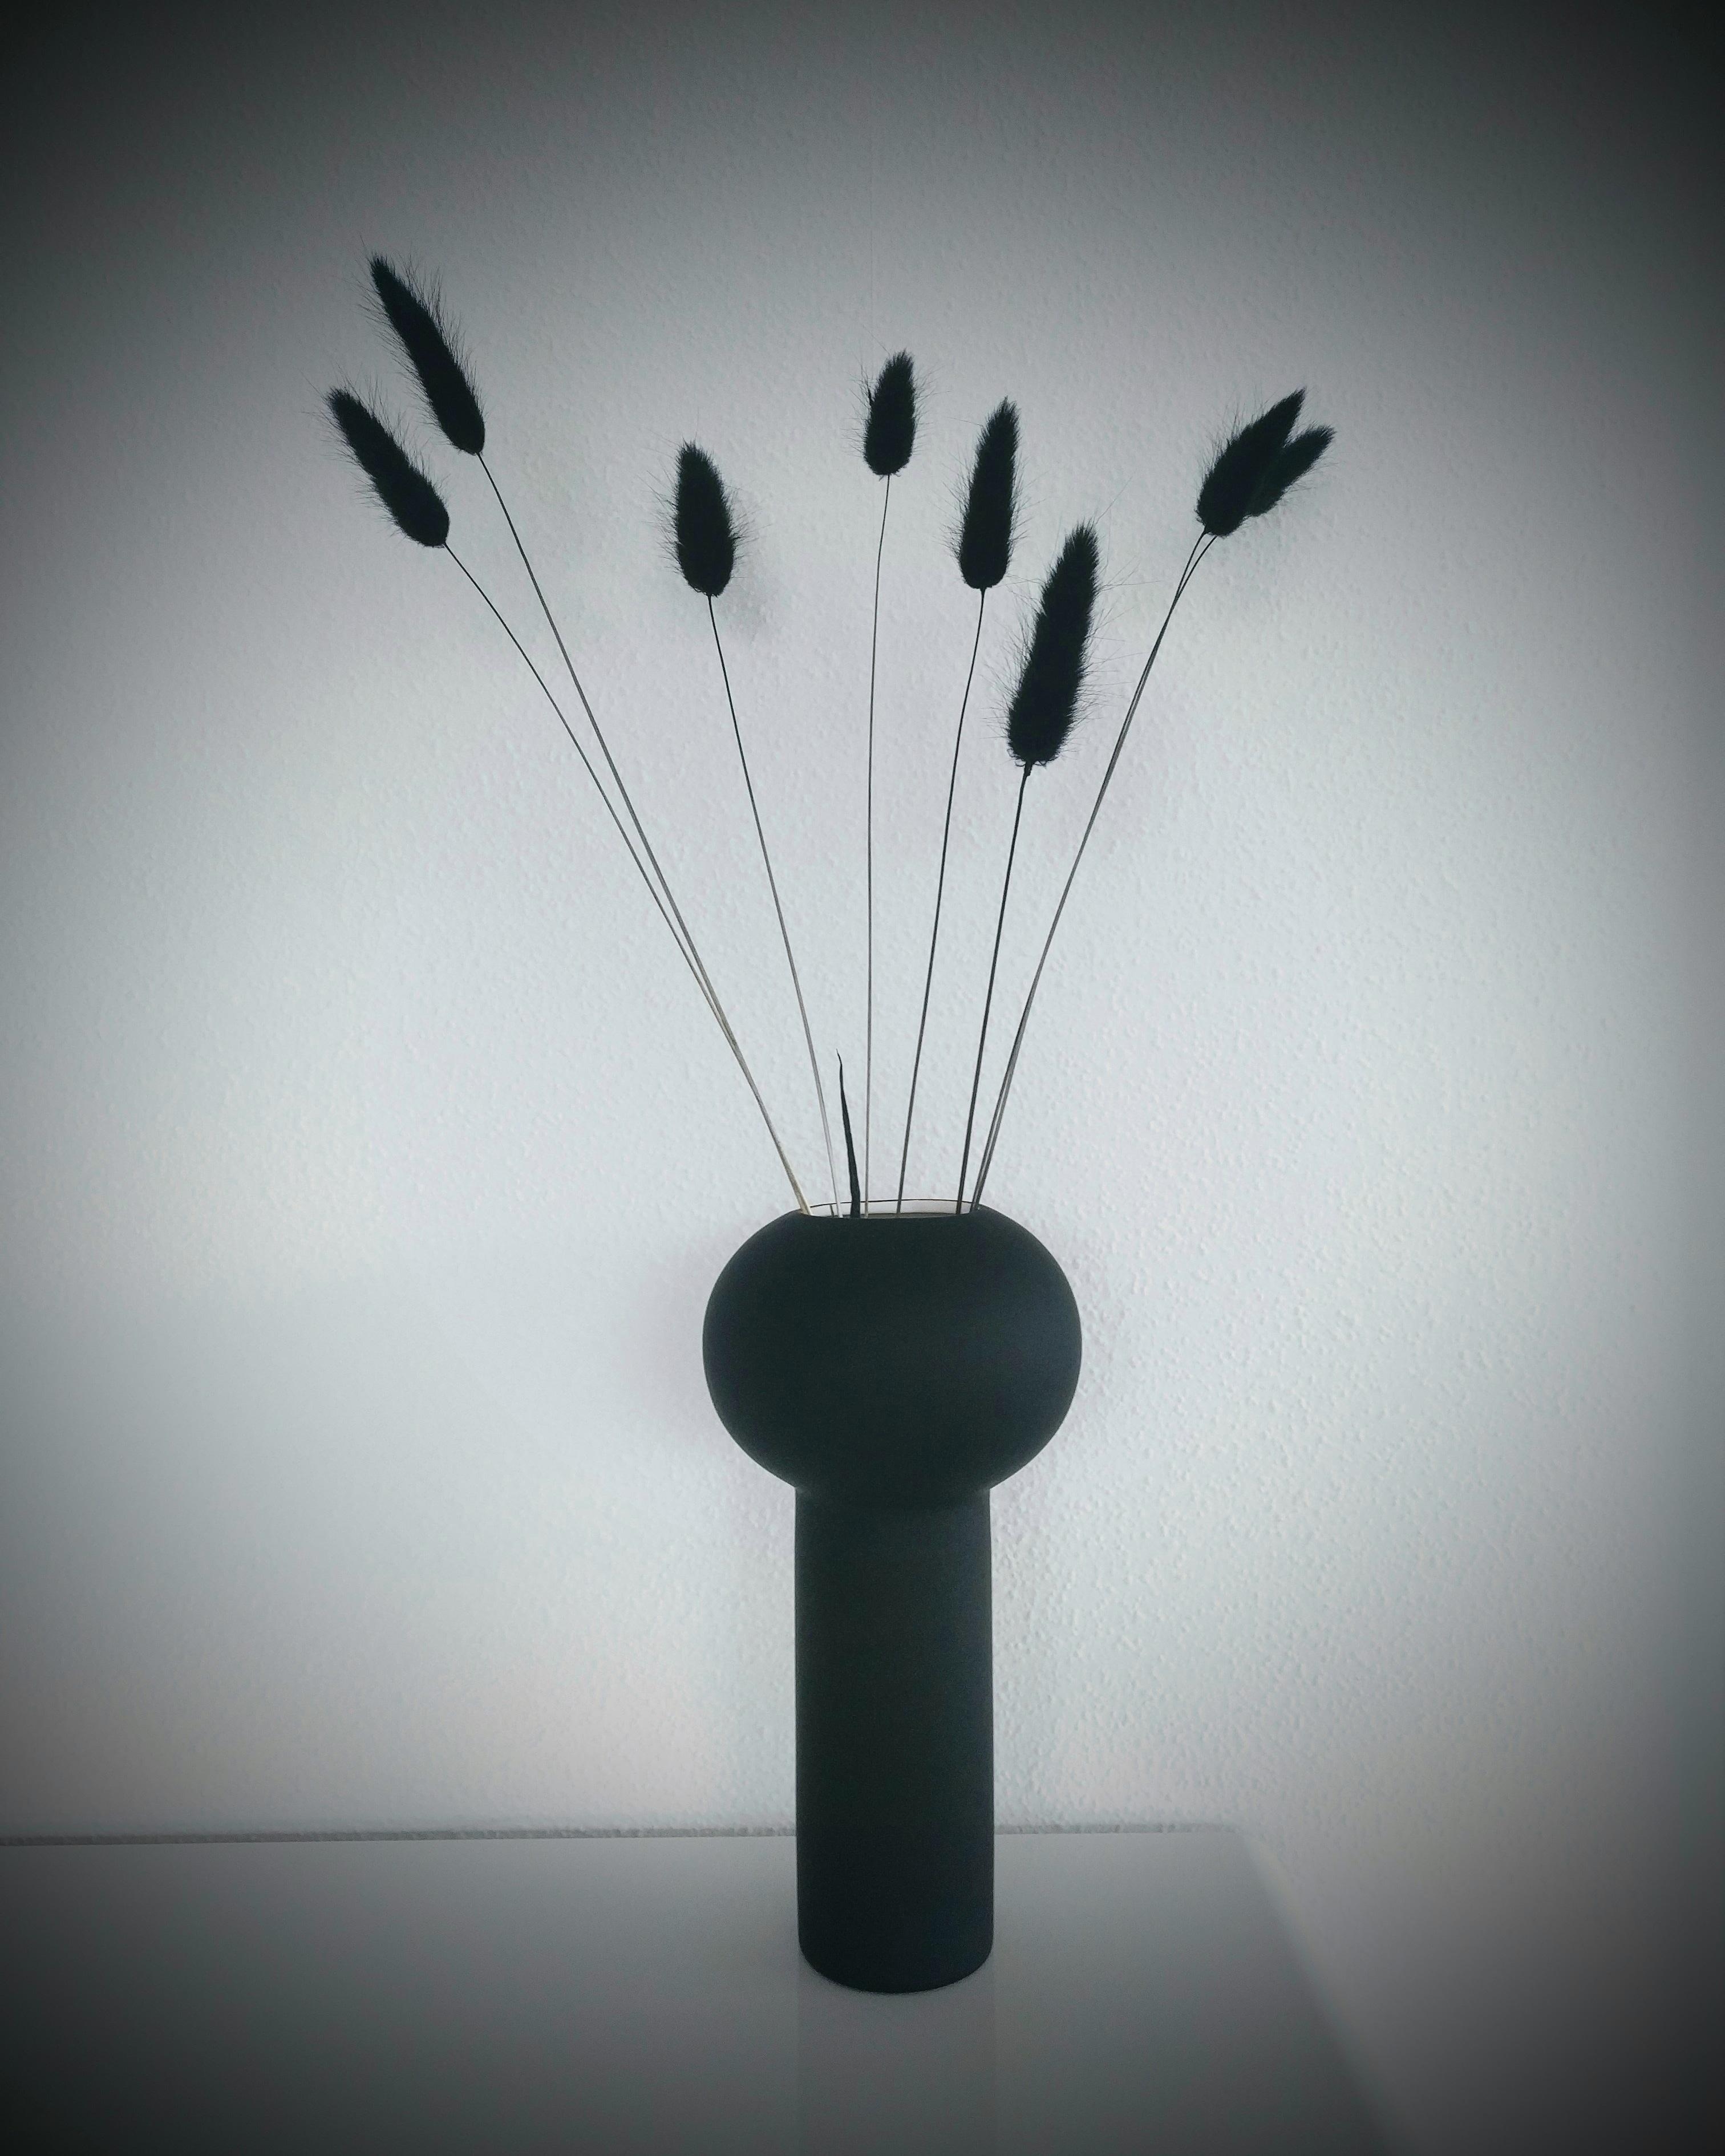 🖤
#vasen#vasenliebe#cooee#schwarzweiß#deko#interior#interiorinspo#wohnzimmer#trockenblumen